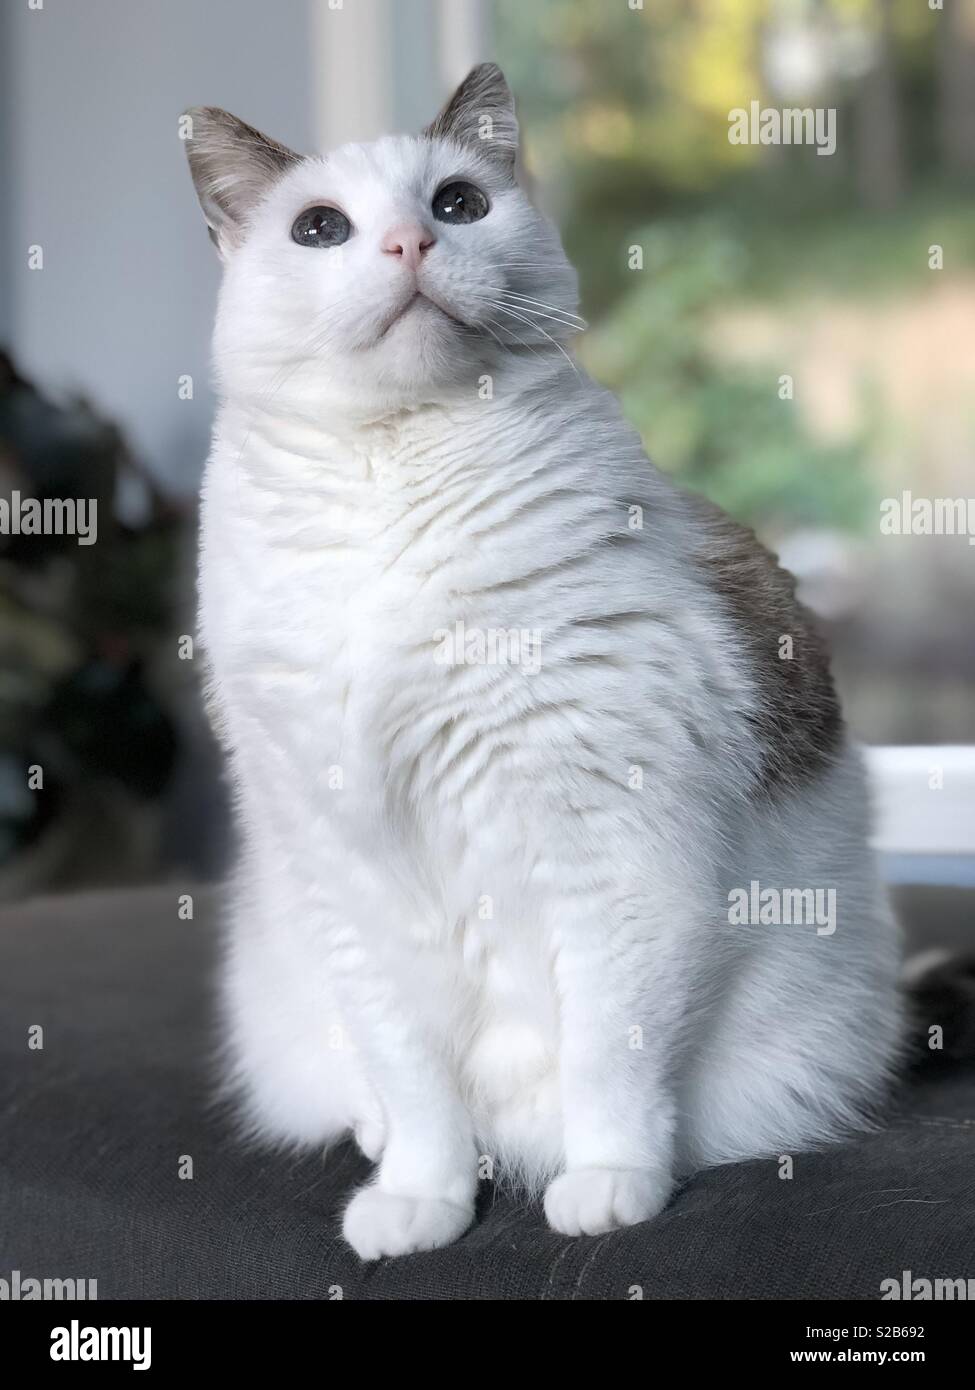 Un chat blanc avec de grands yeux bleus, en haut. Banque D'Images